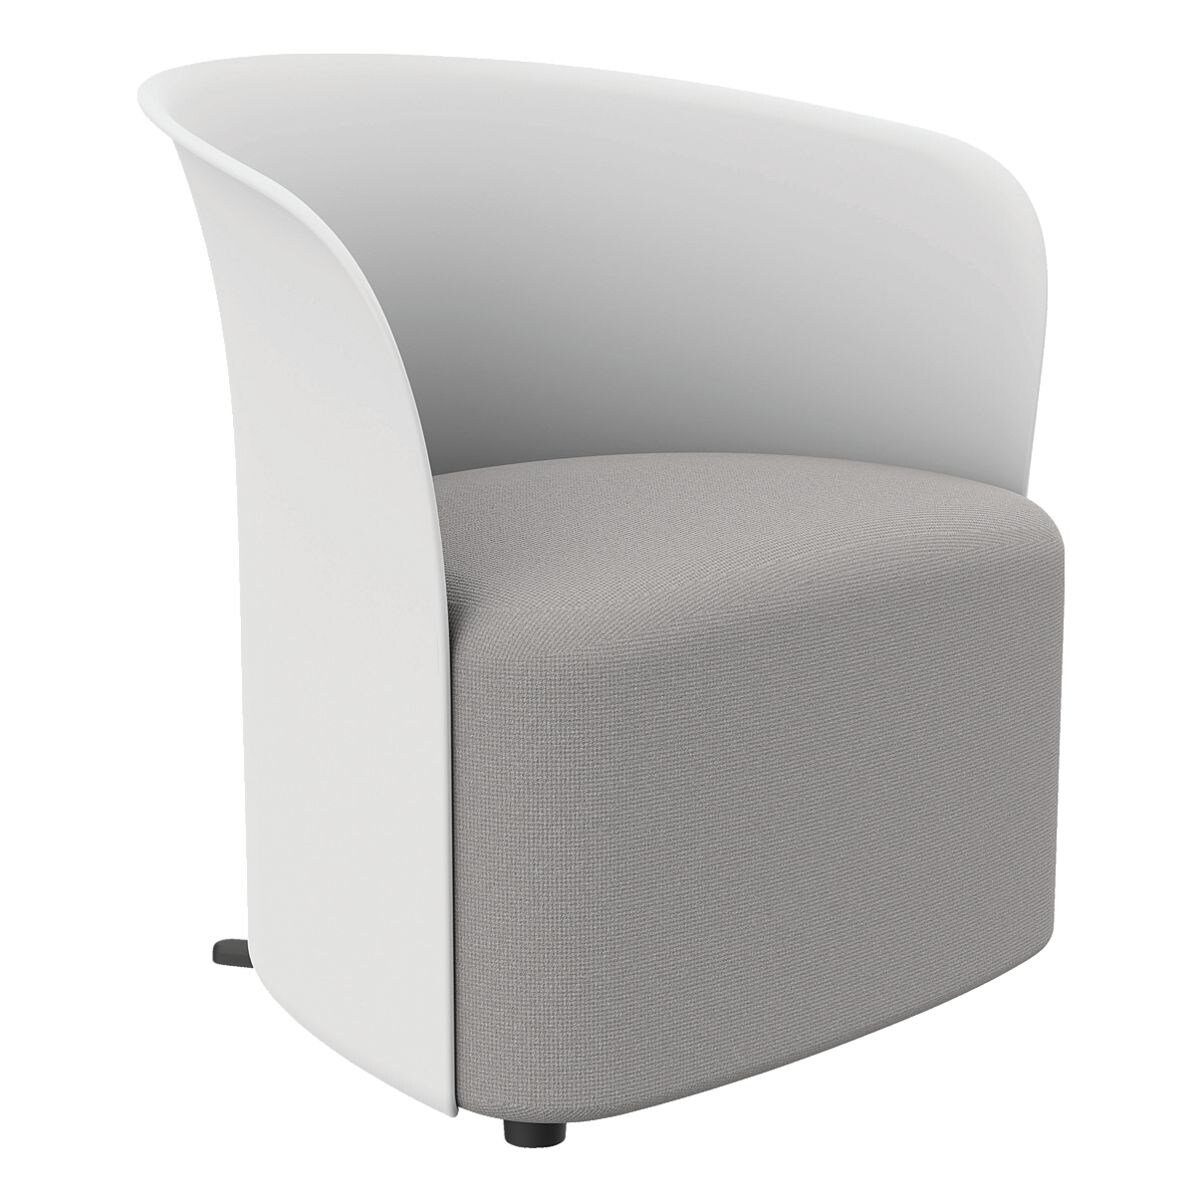 PAPERFLOW Sessel Crown, Clubsessel, durchgehende Rückenlehne, Standfüße, Sitzhöhe 38 cm weiß